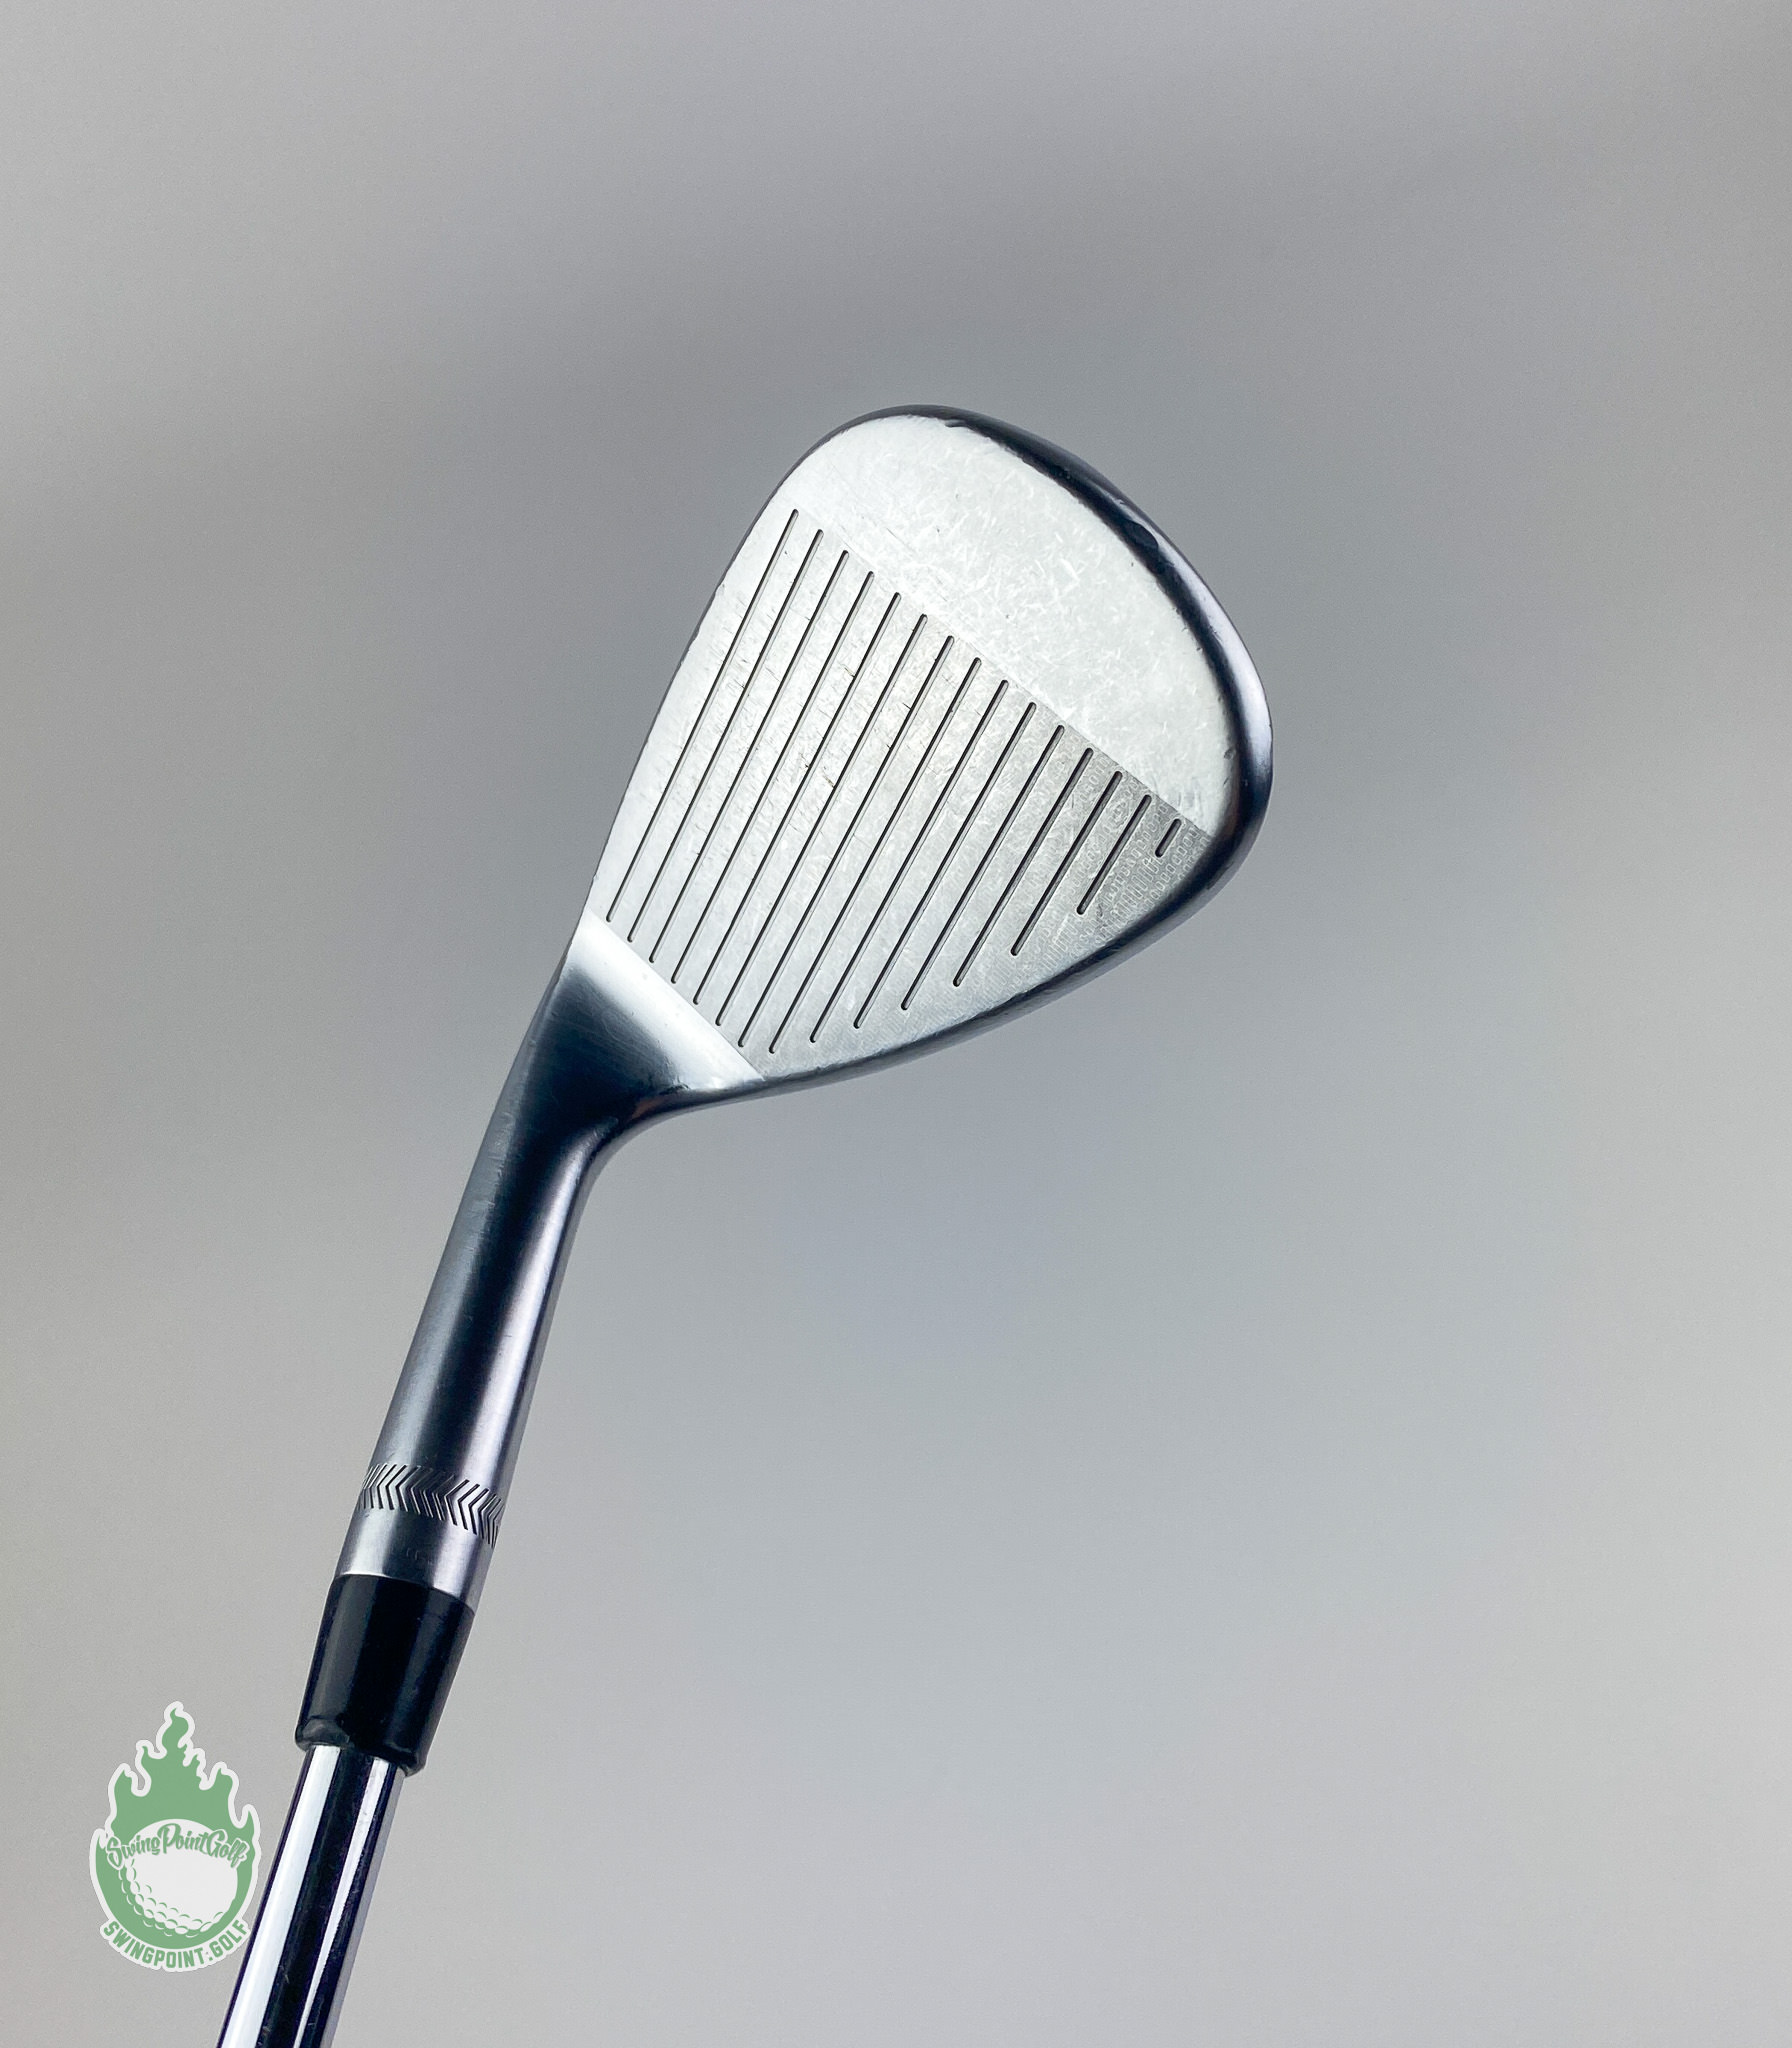 Used RH PXG 0311 Forged Wedge 50*-12 DG Tour Issue Stiff Flex Steel Golf  Club · SwingPoint Golf®